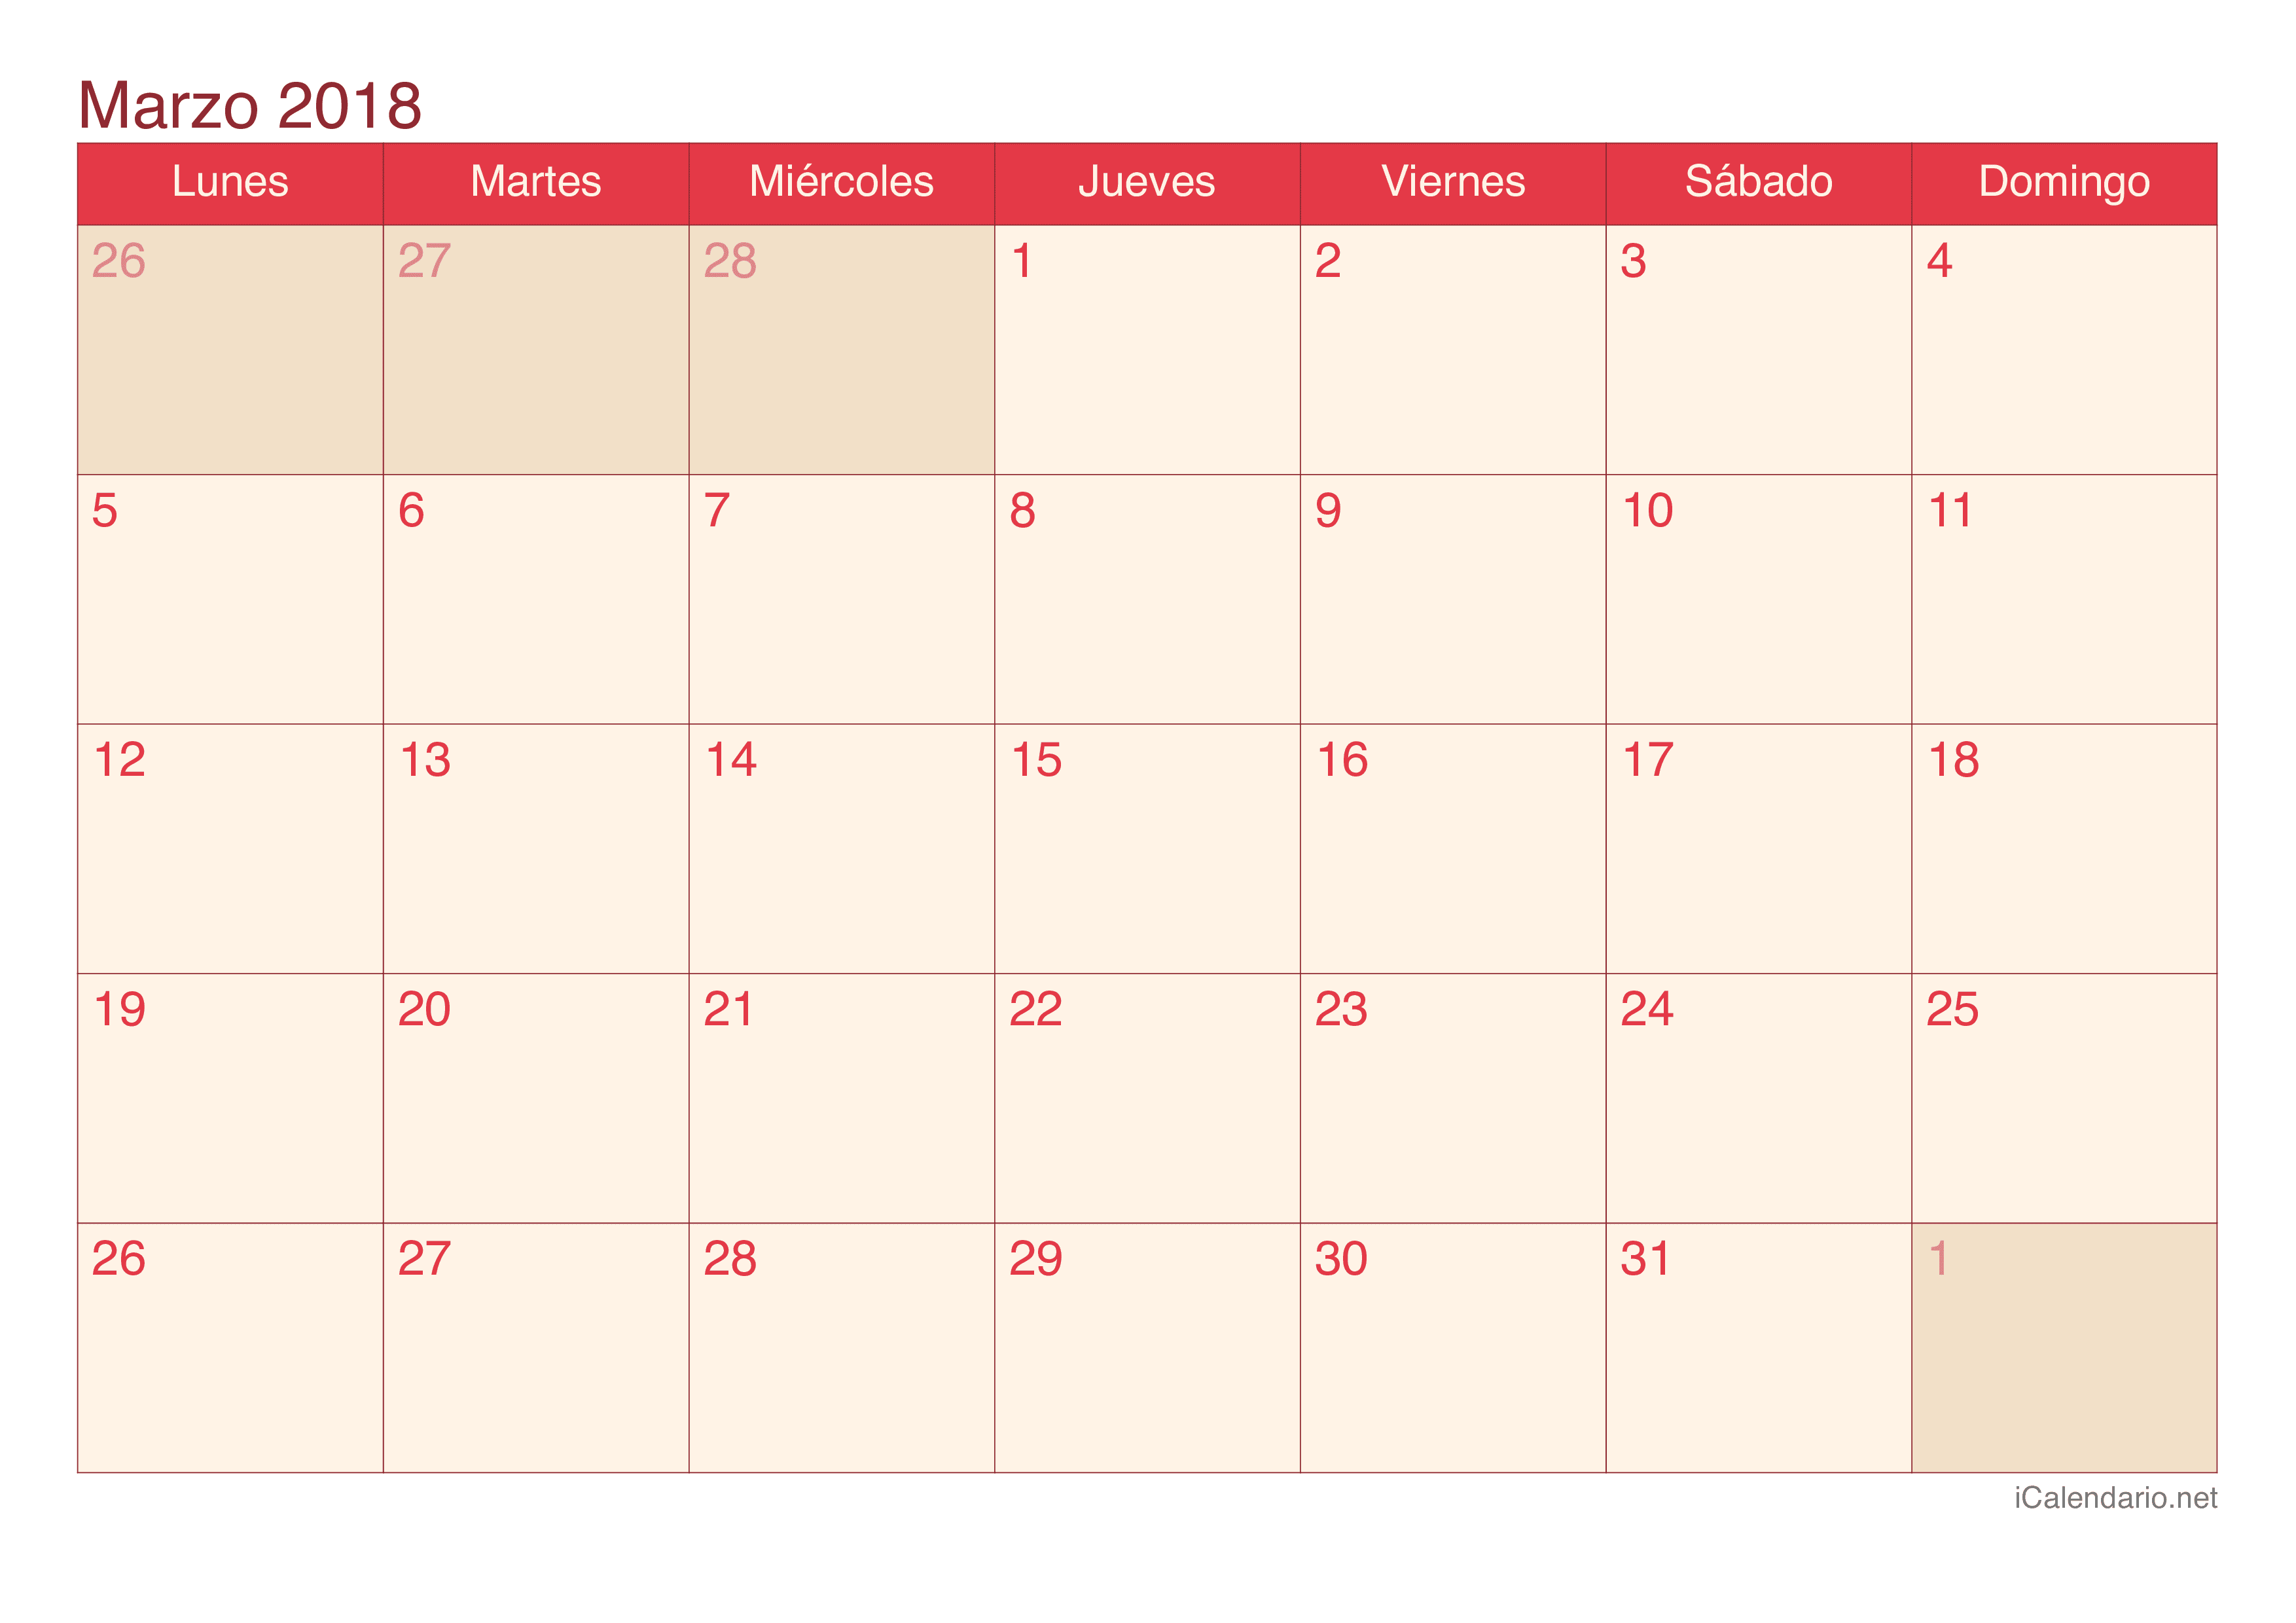 Calendario de marzo 2018 - Cherry